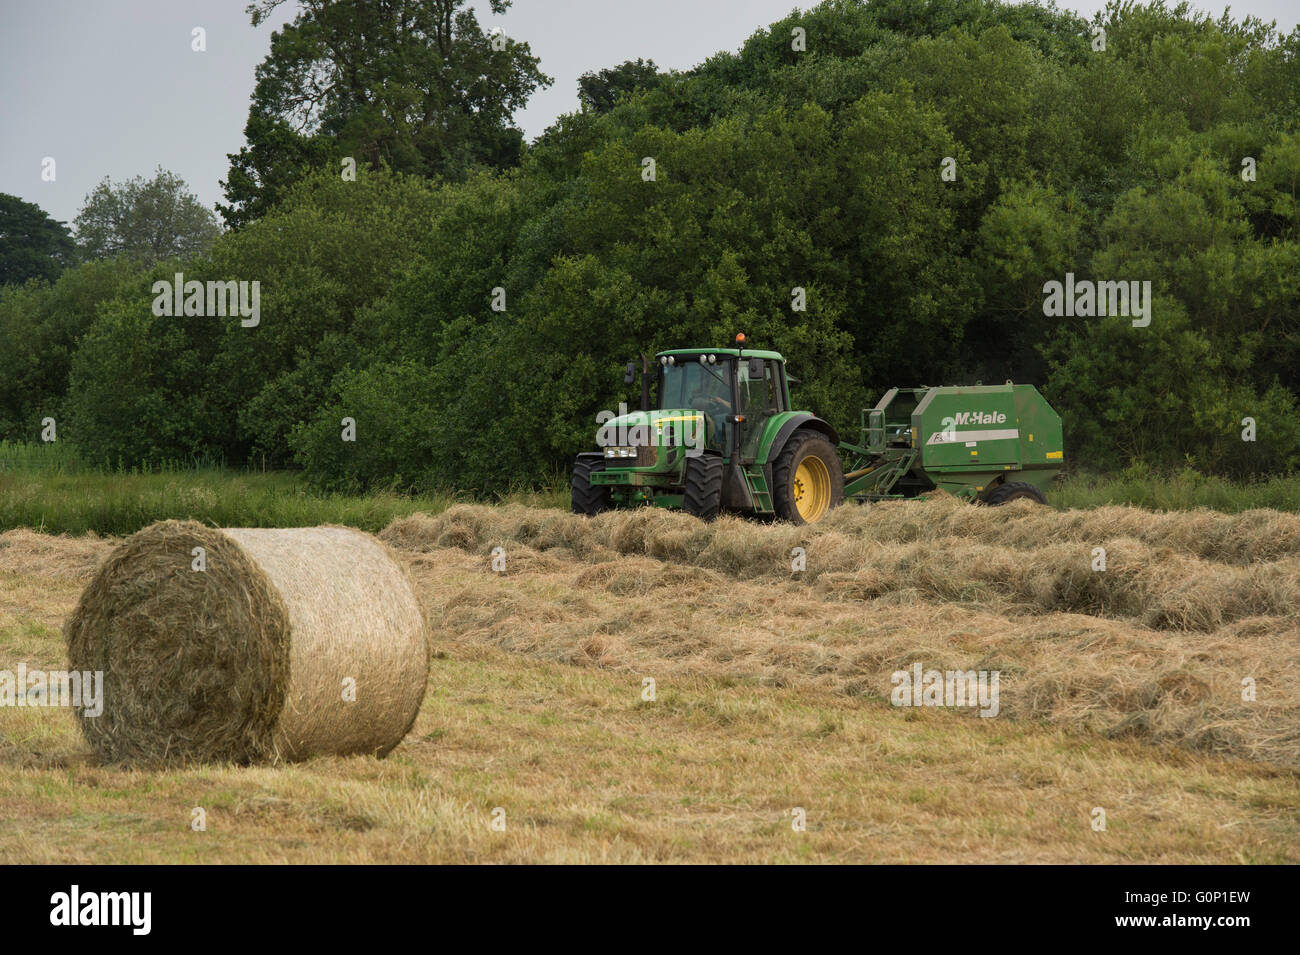 Du foin ou ensilage, Great Ouseburn, North Yorkshire, Angleterre - balle ronde sur le terrain avec le tracteur en vert & travailler au-delà, en sortant une ramasseuse-presse. Banque D'Images